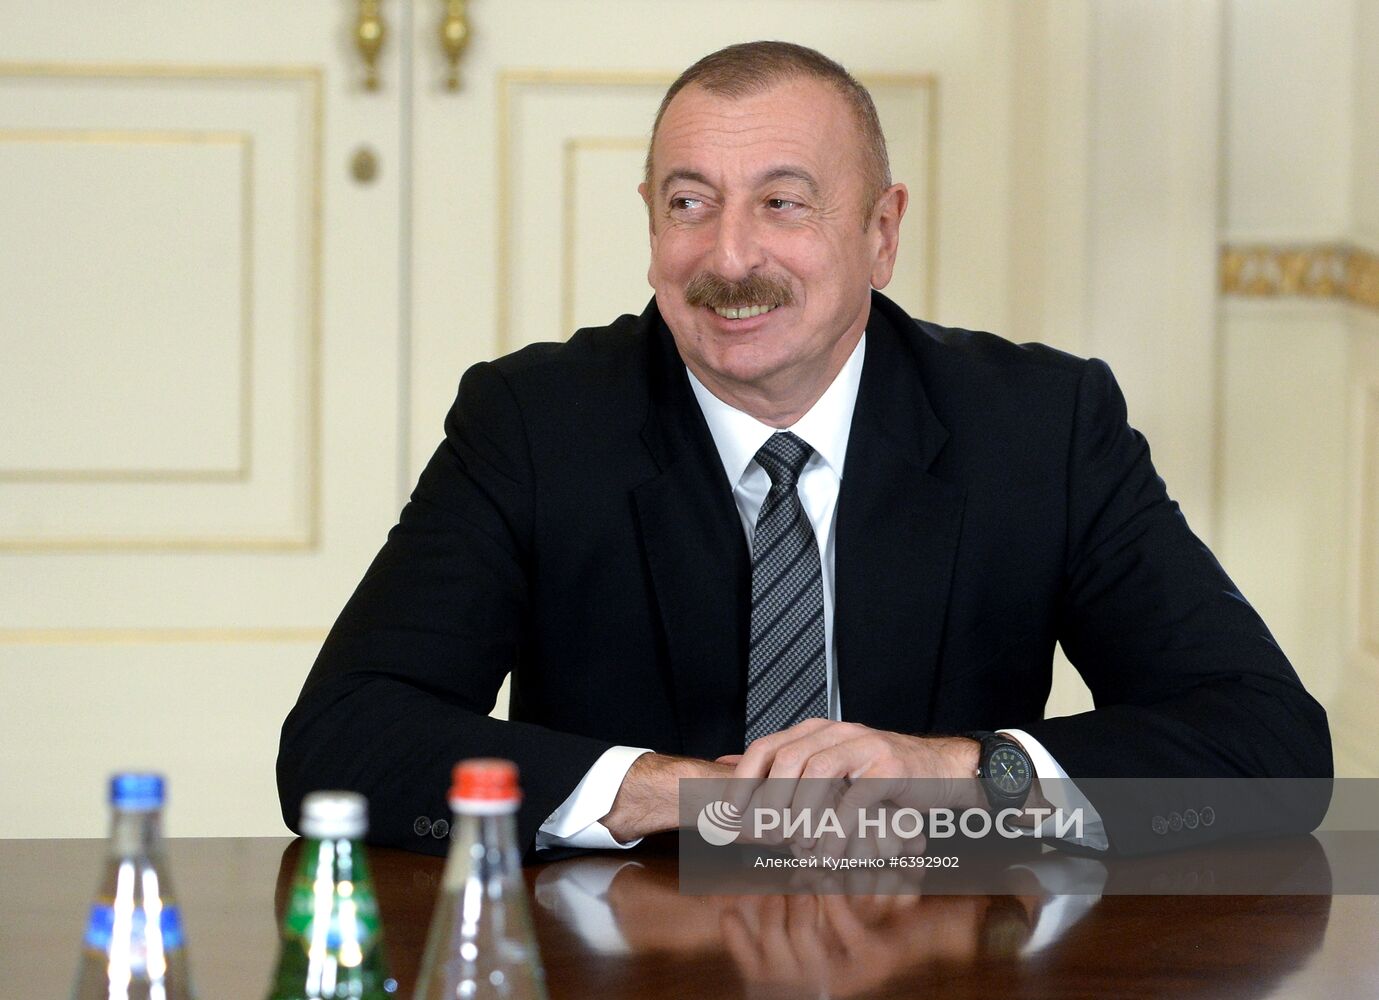 Визит делегации РФ в Азербайджан